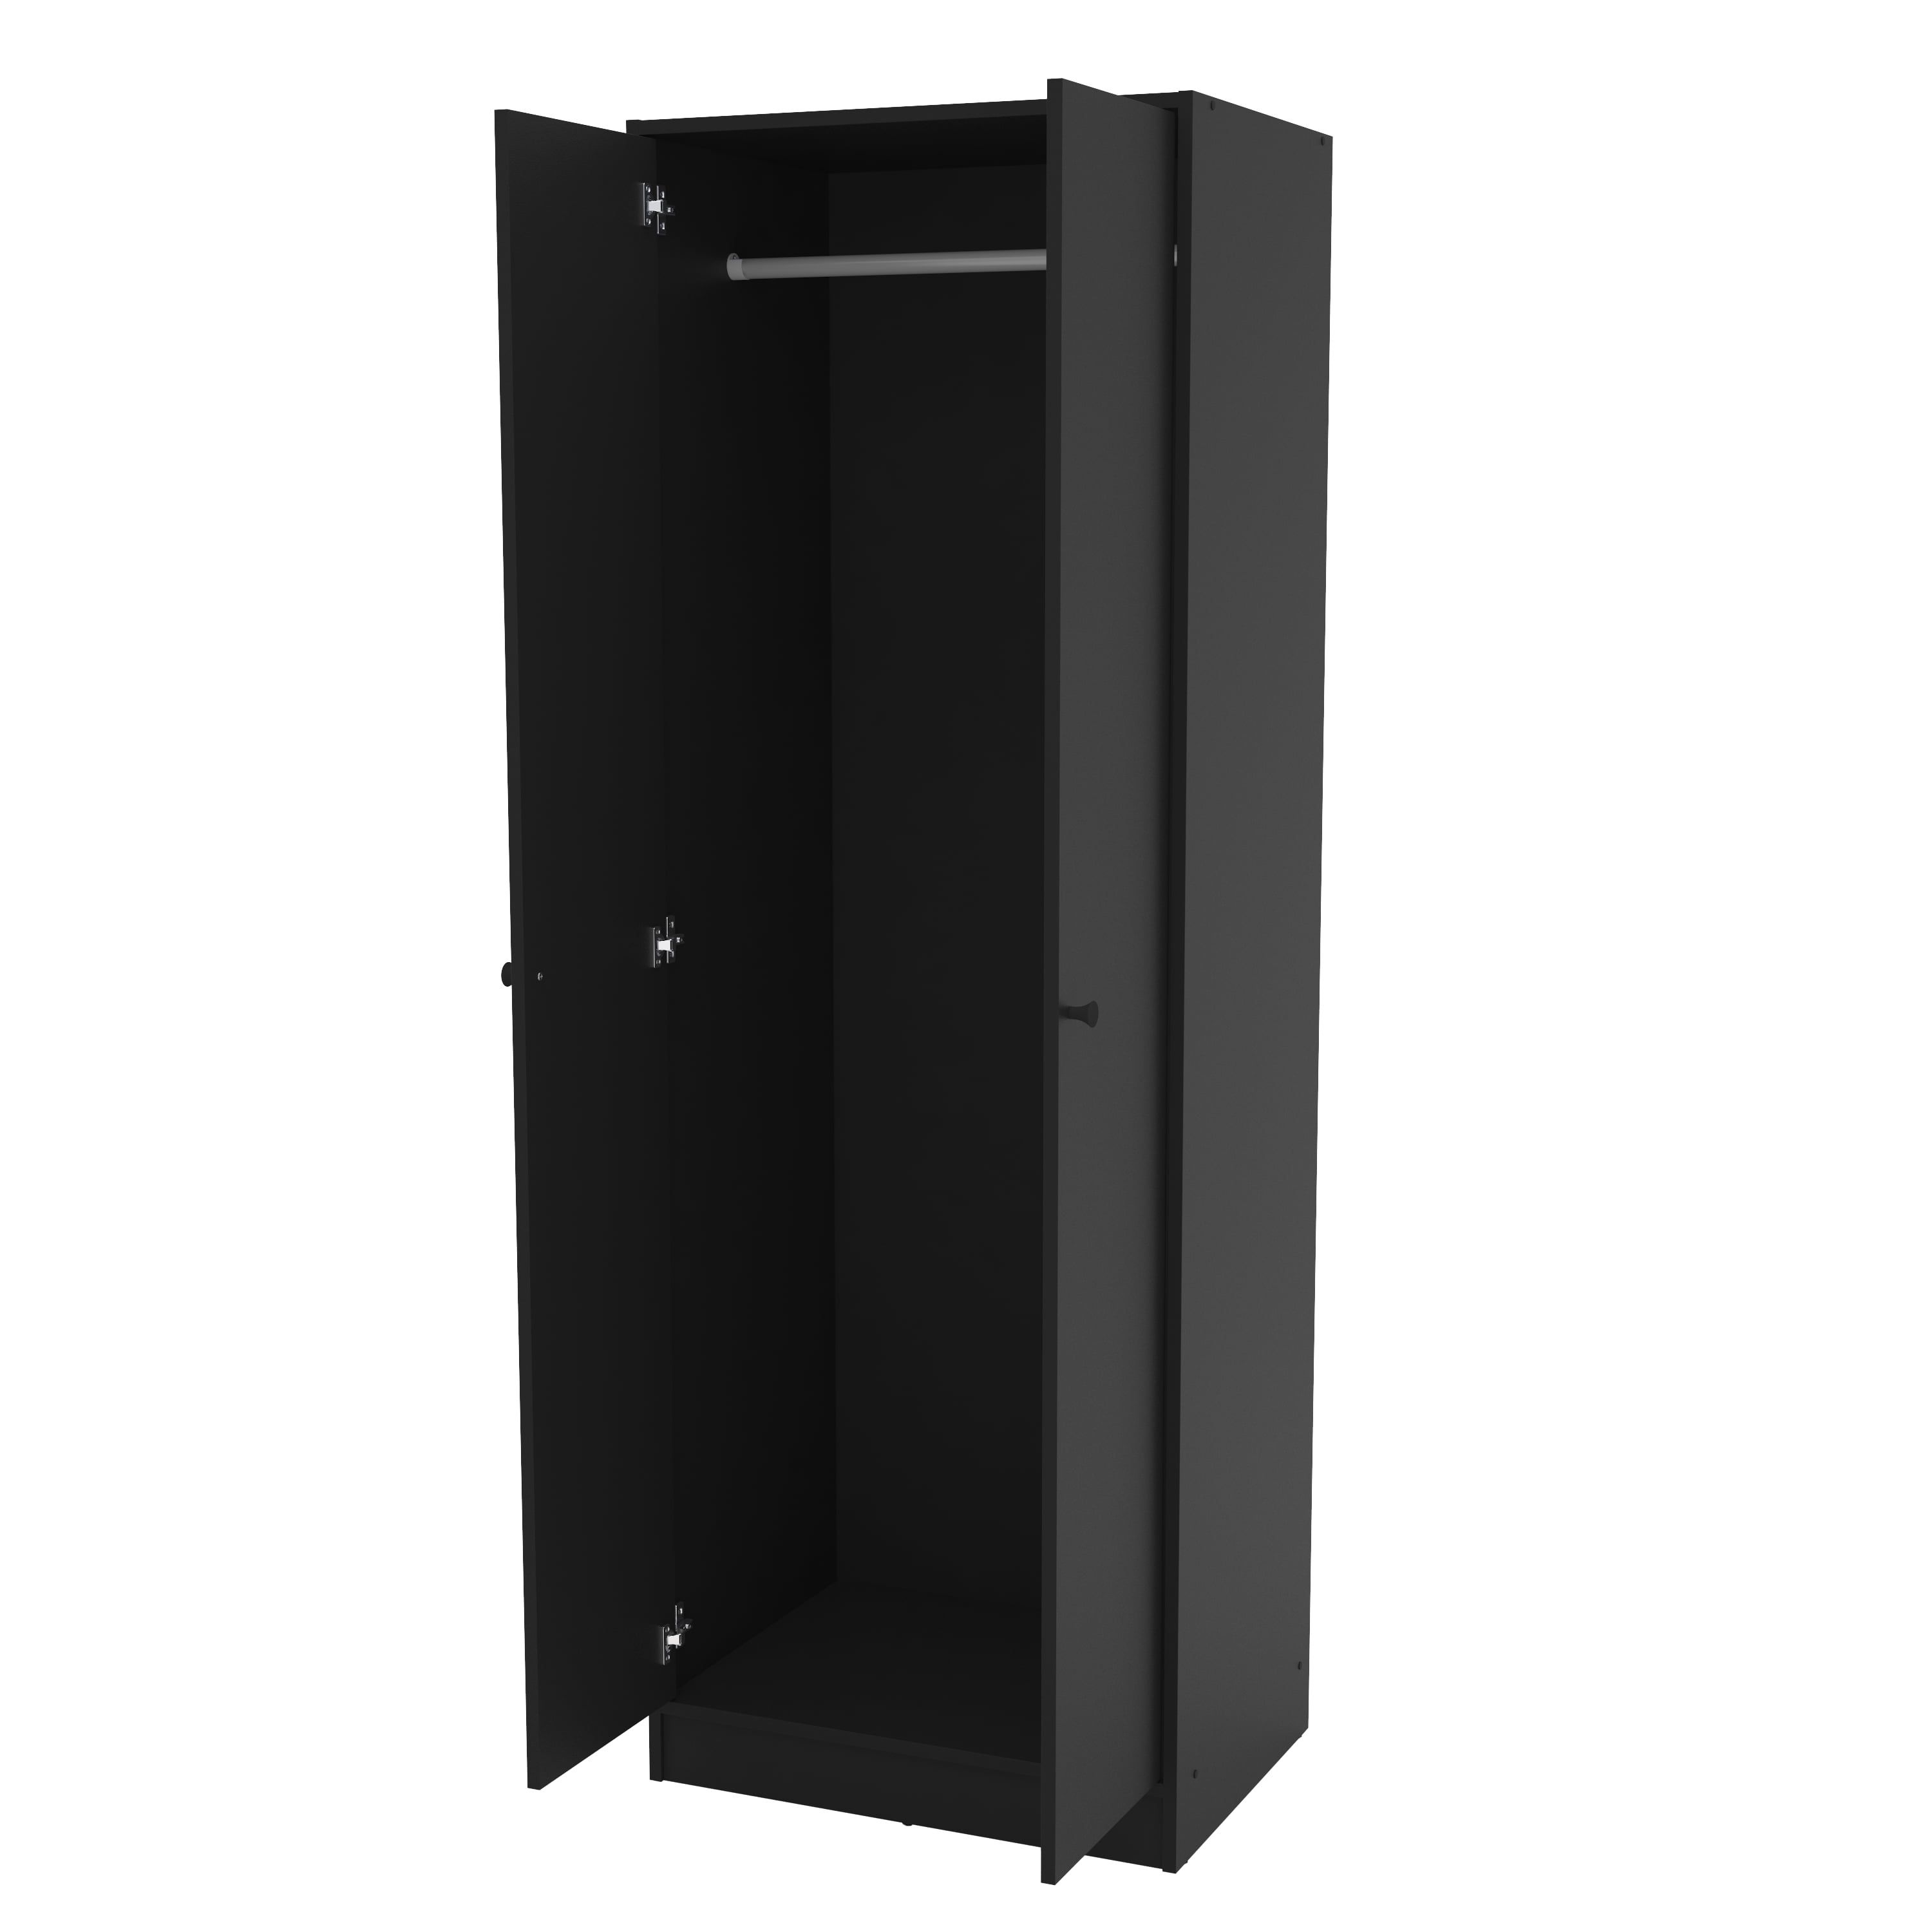 Polifurniture Denmark 2 Door Bedroom Armoire, Black – Walmart With Regard To Black Single Door Wardrobes (View 18 of 20)